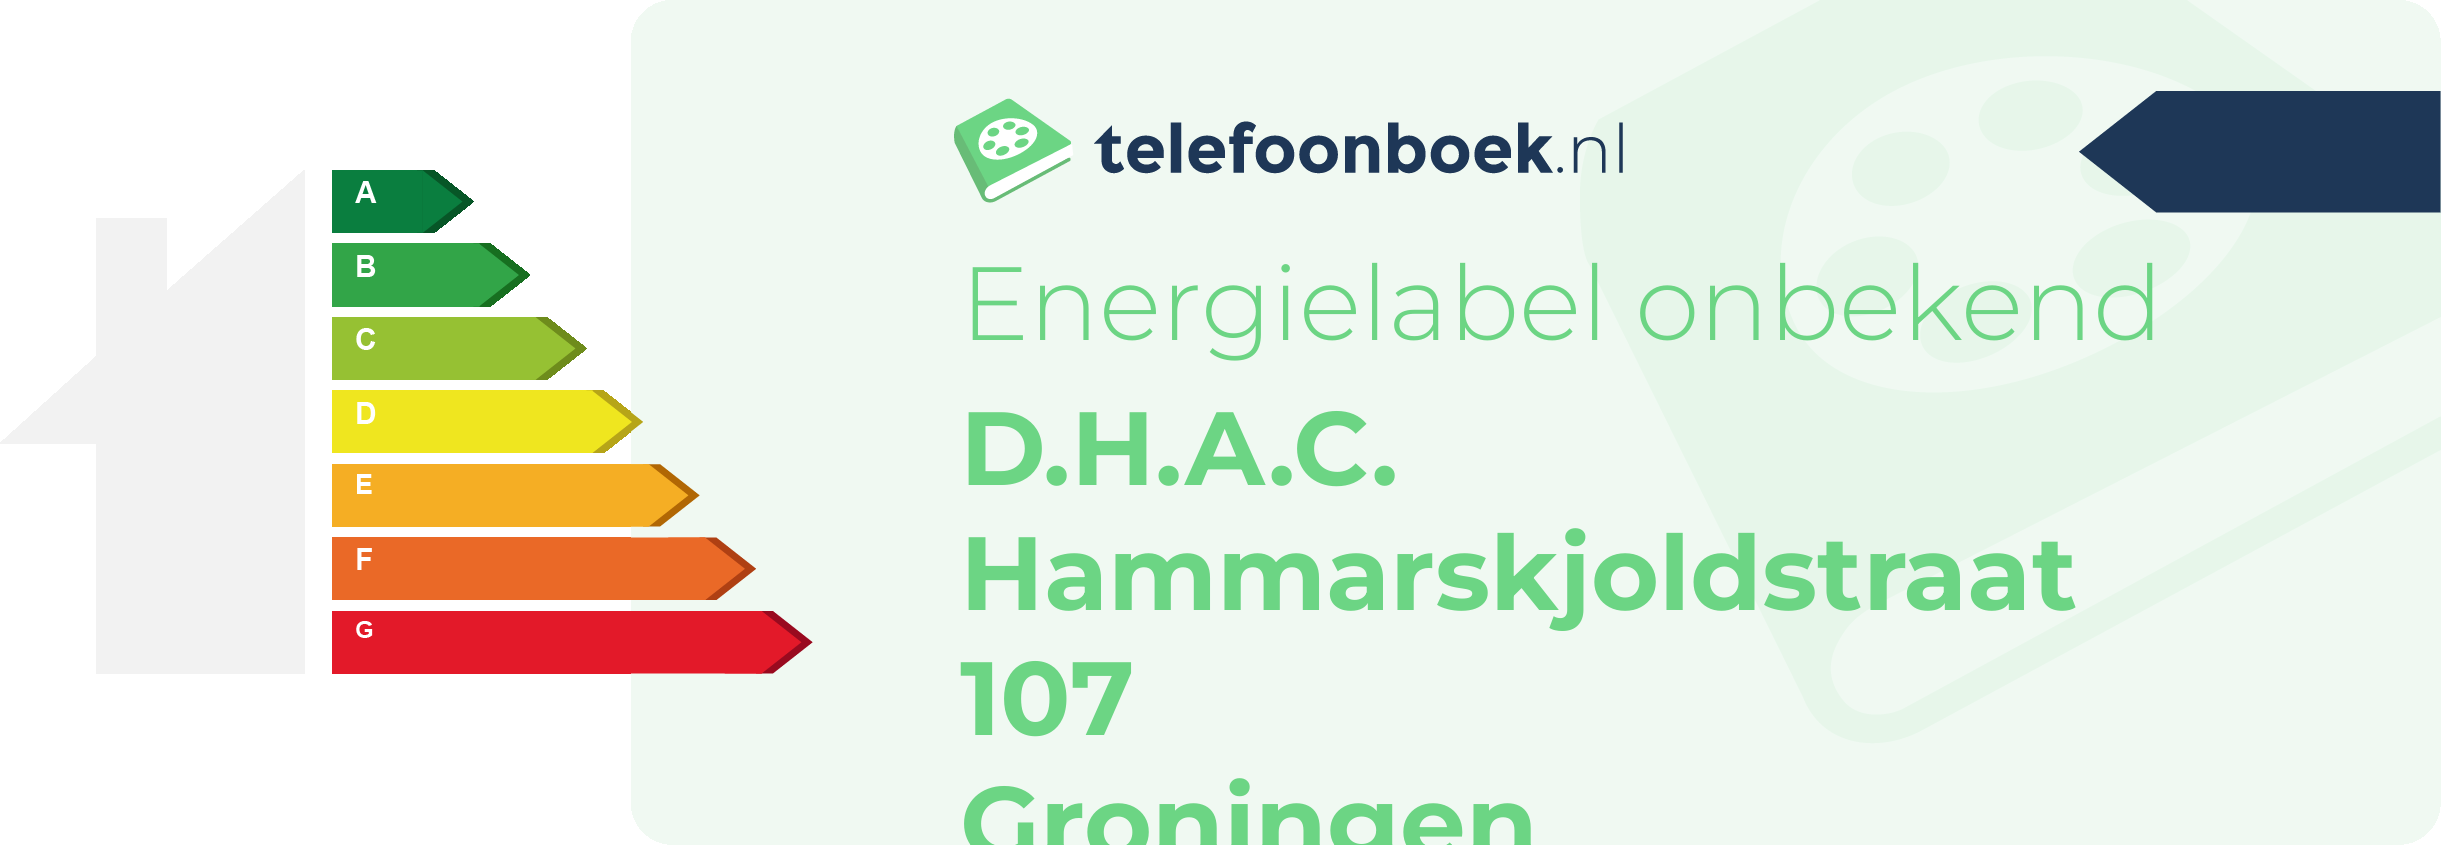 Energielabel D.H.A.C. Hammarskjoldstraat 107 Groningen